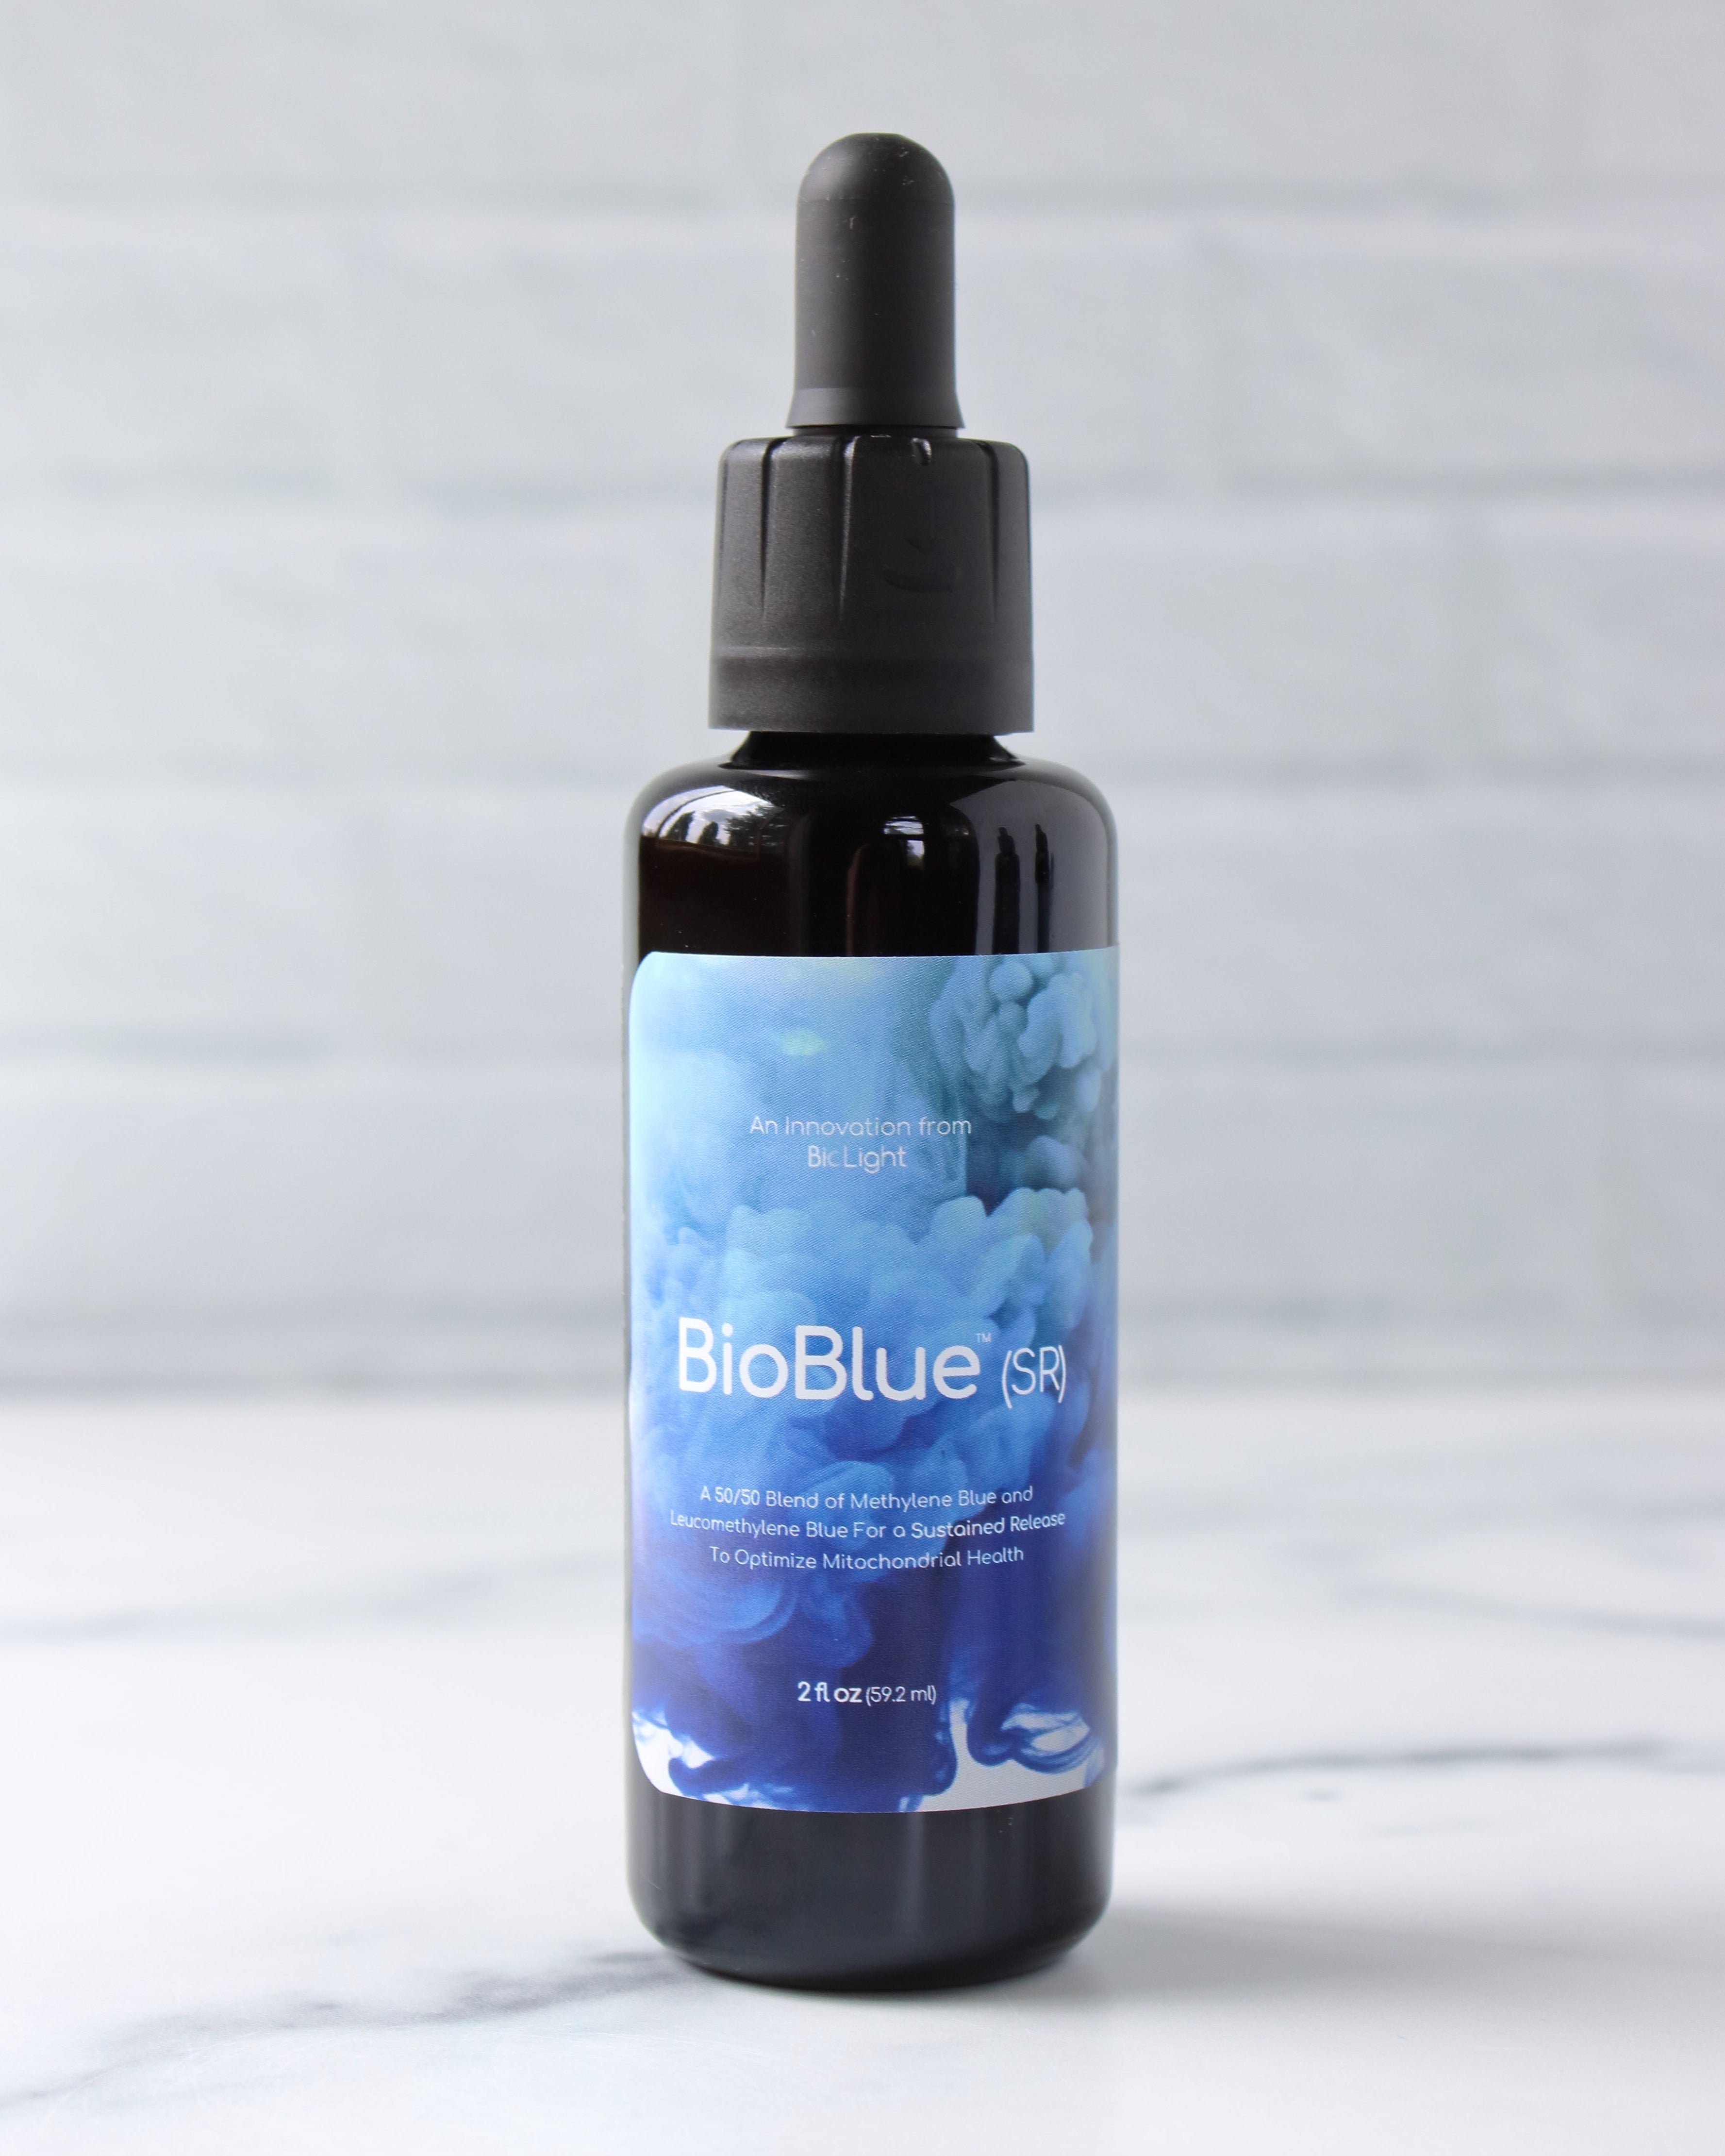 BioBlue (SR)